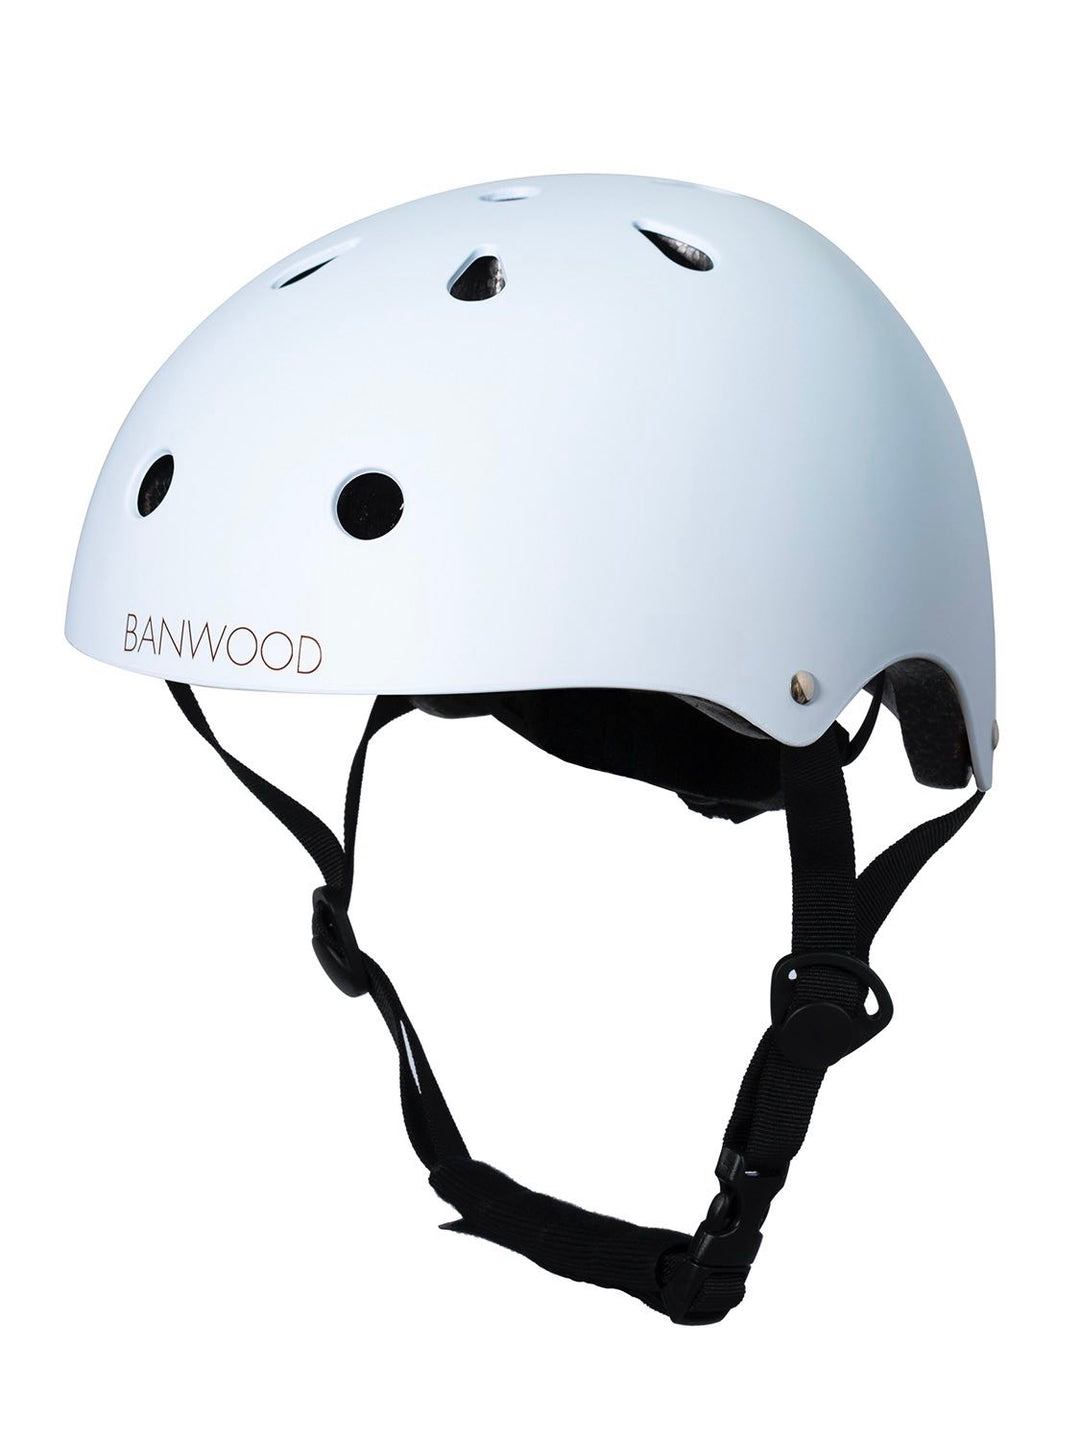 Banwood Classic Helmet in Sky